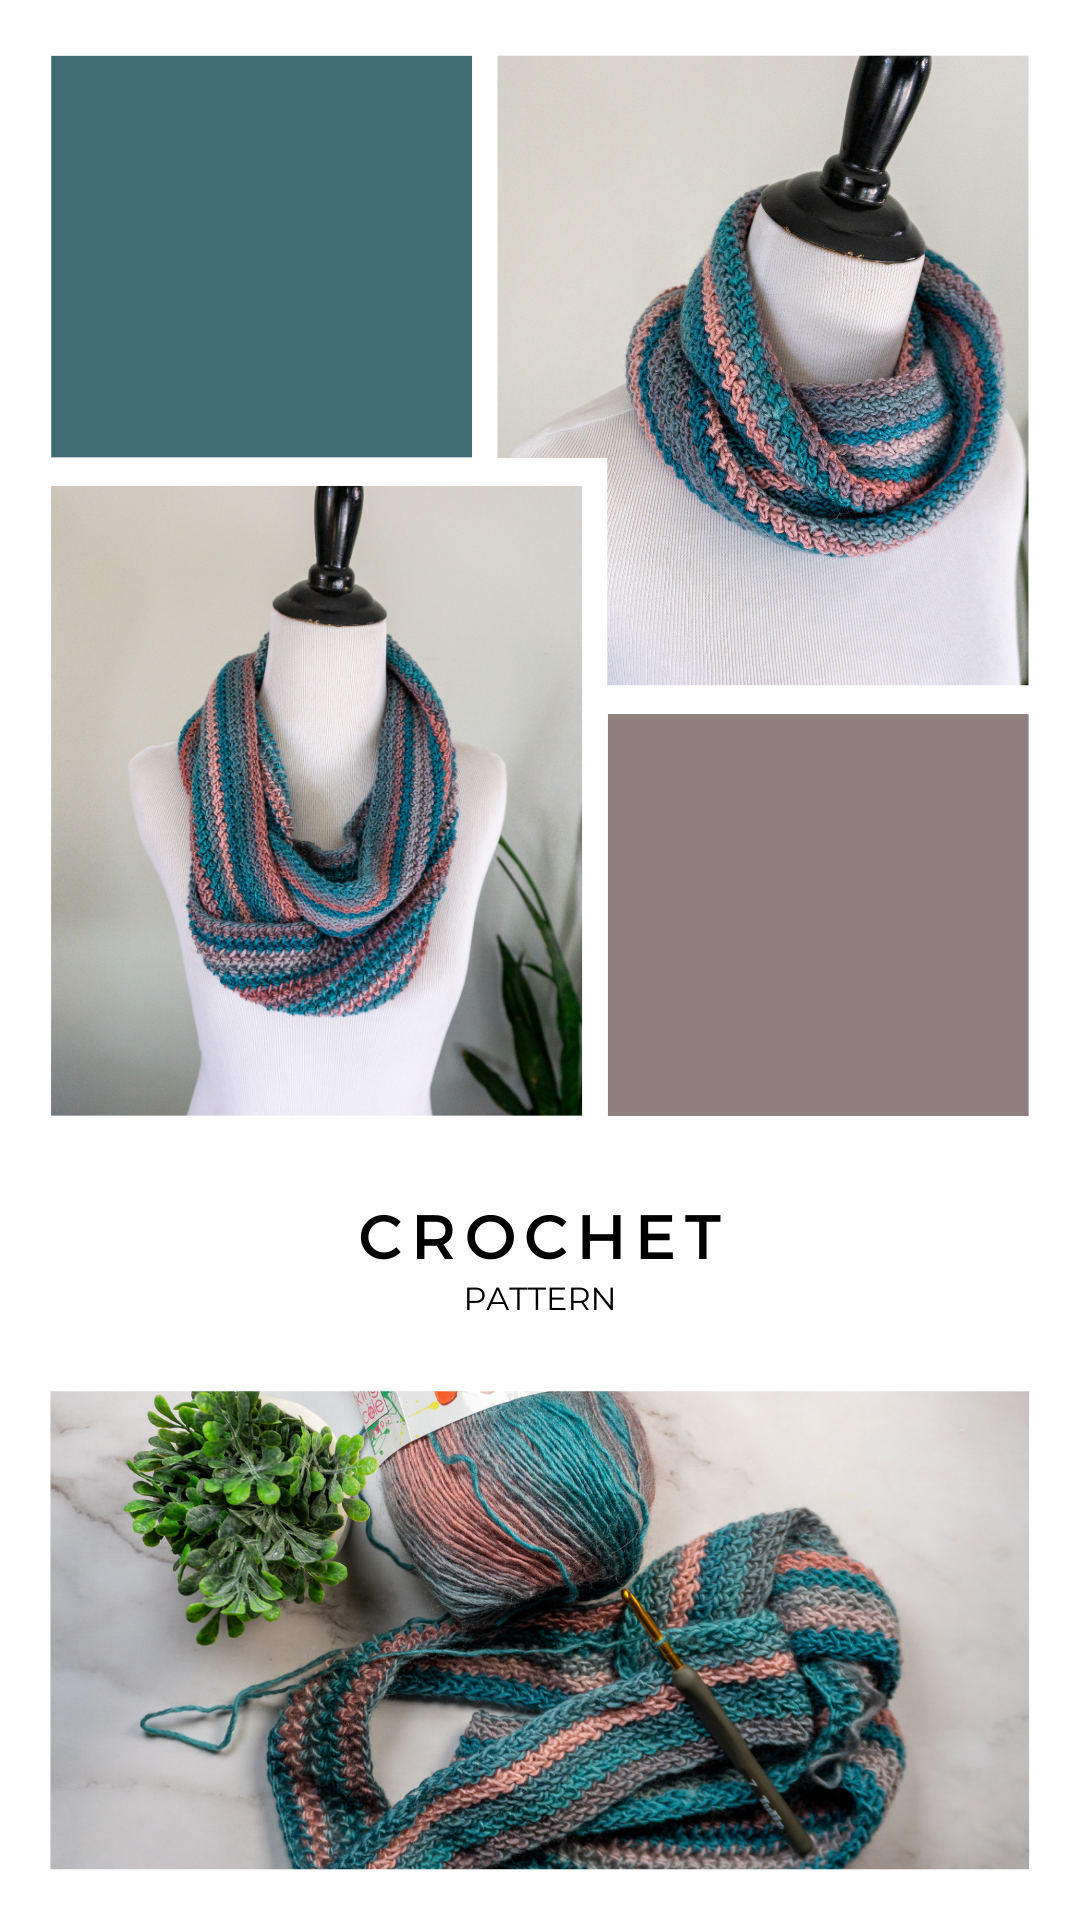 Free Crochet Infinity Scarf Pattern